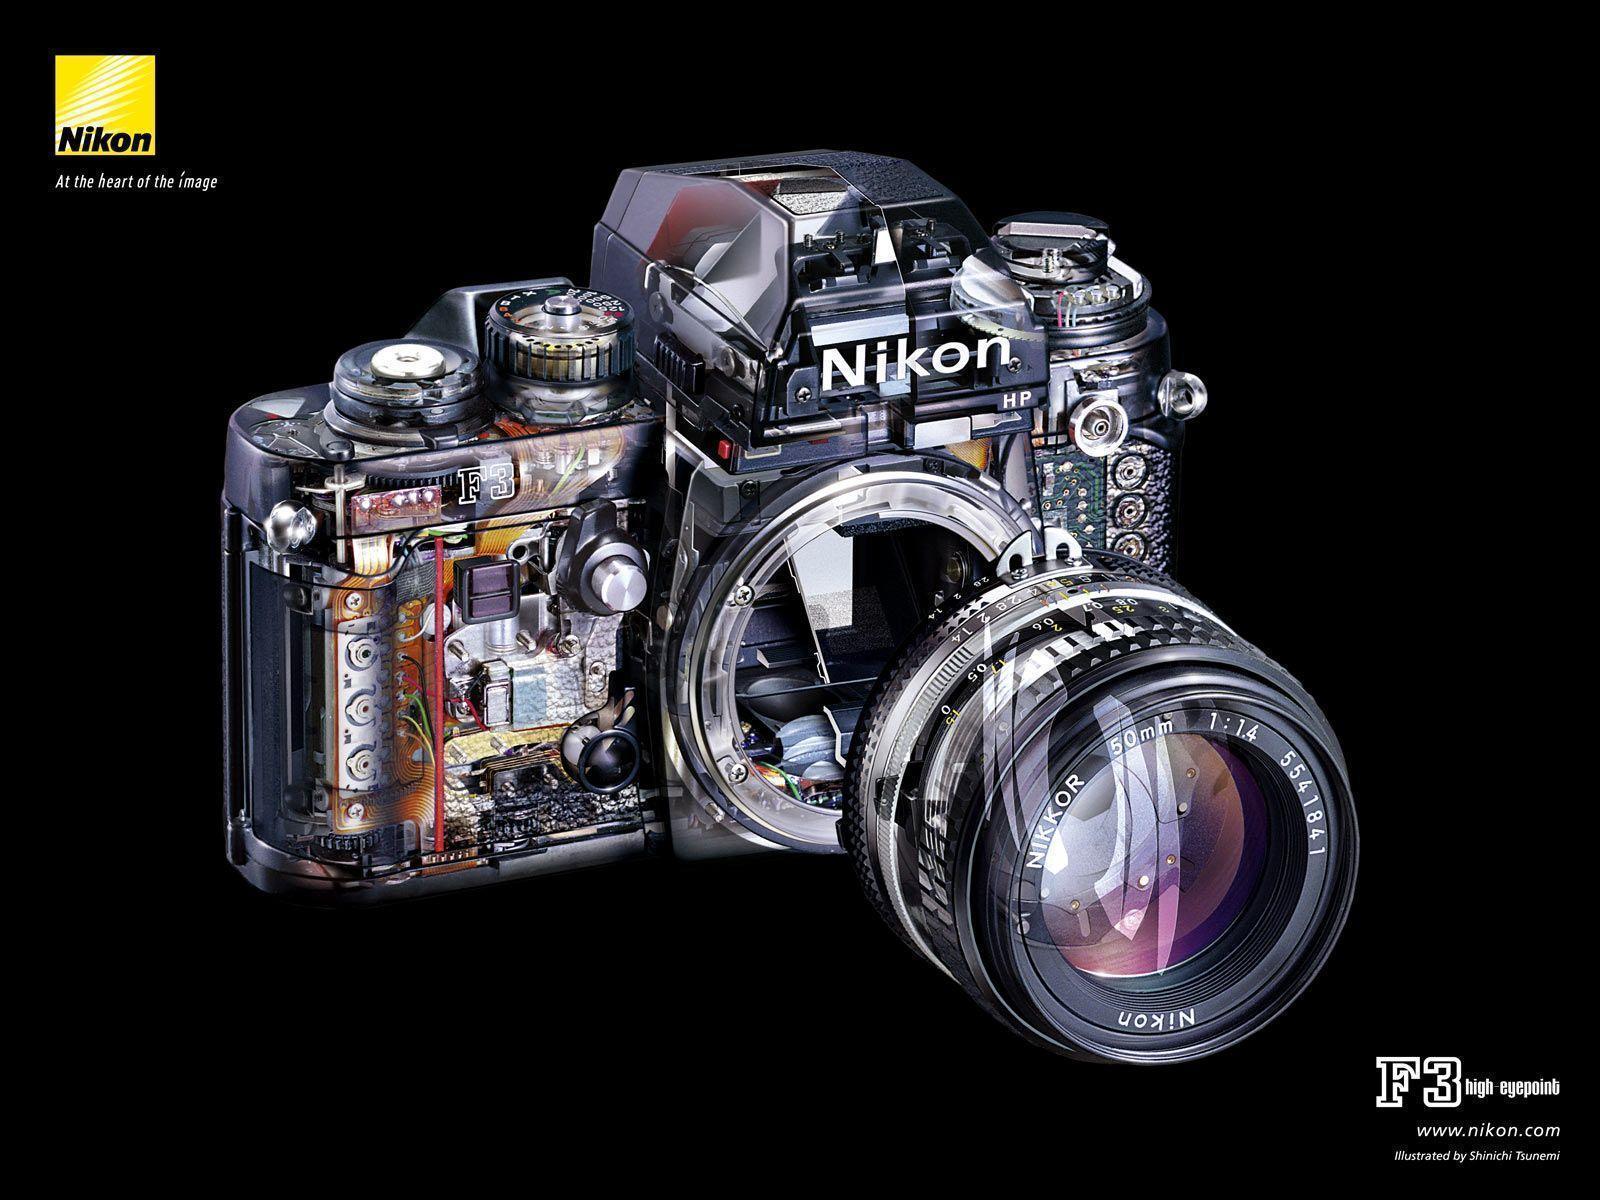 Nikon Wallpaper HD 6147 1920x1080